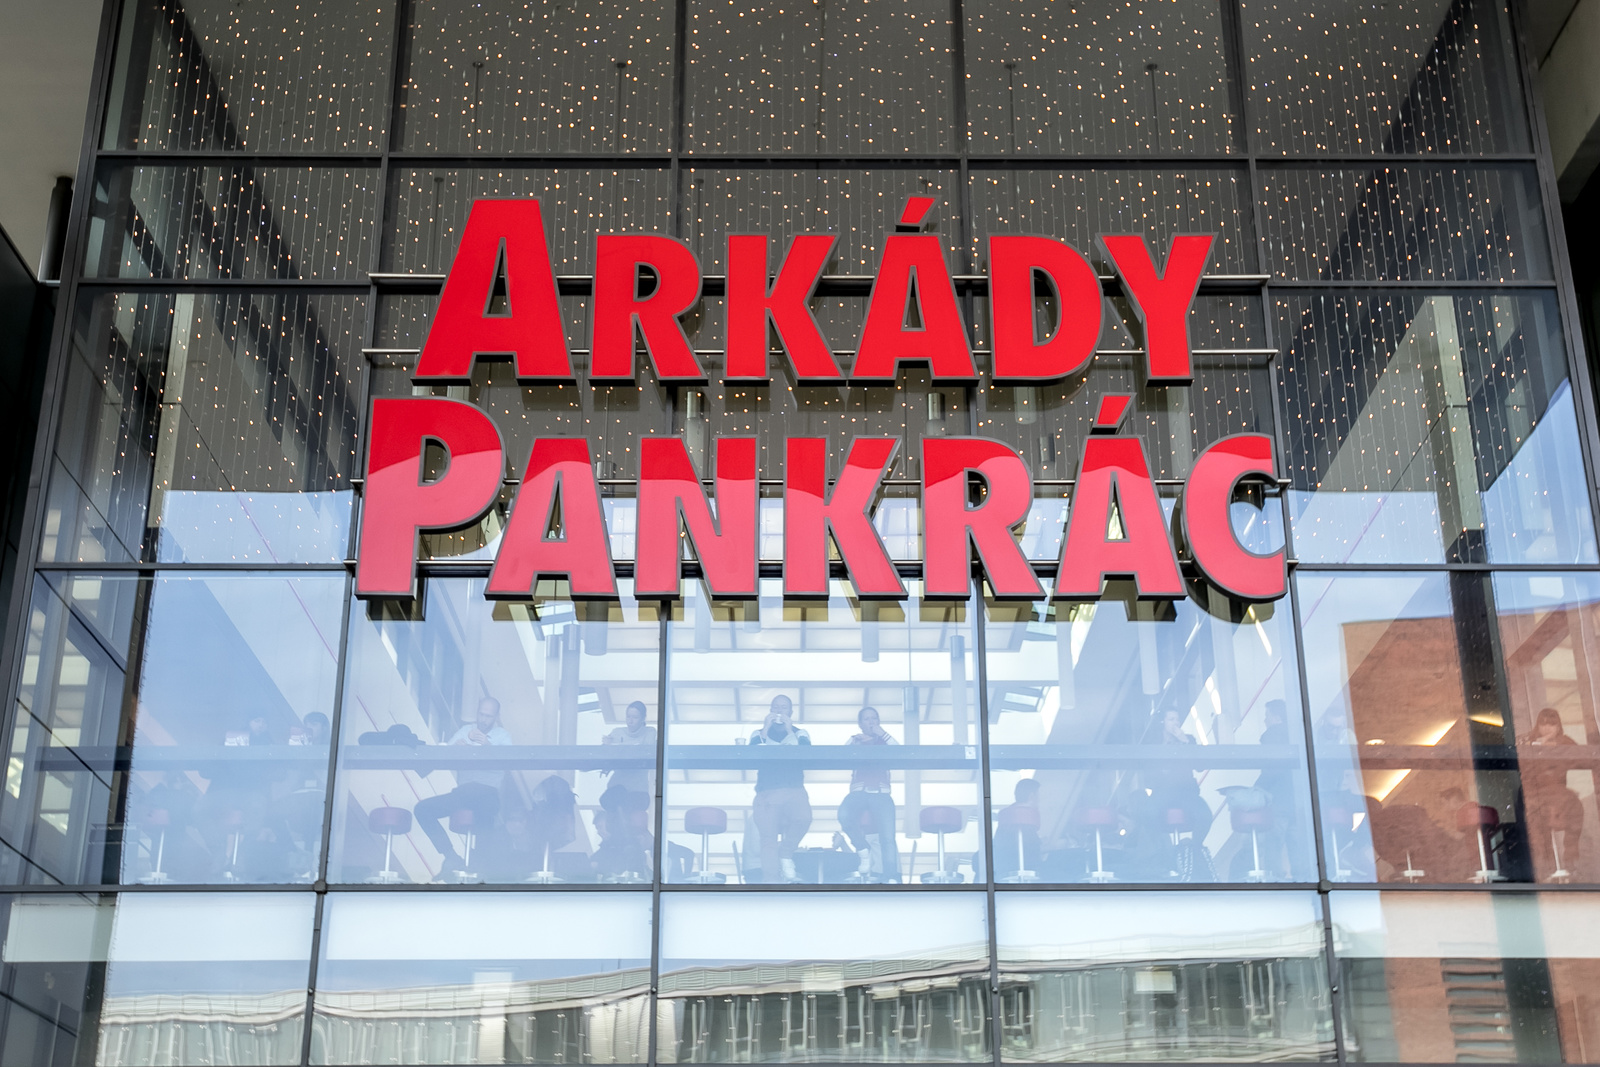 Obchodní centra lákají na nové restaurace, box či medúzárium - Pražský deník